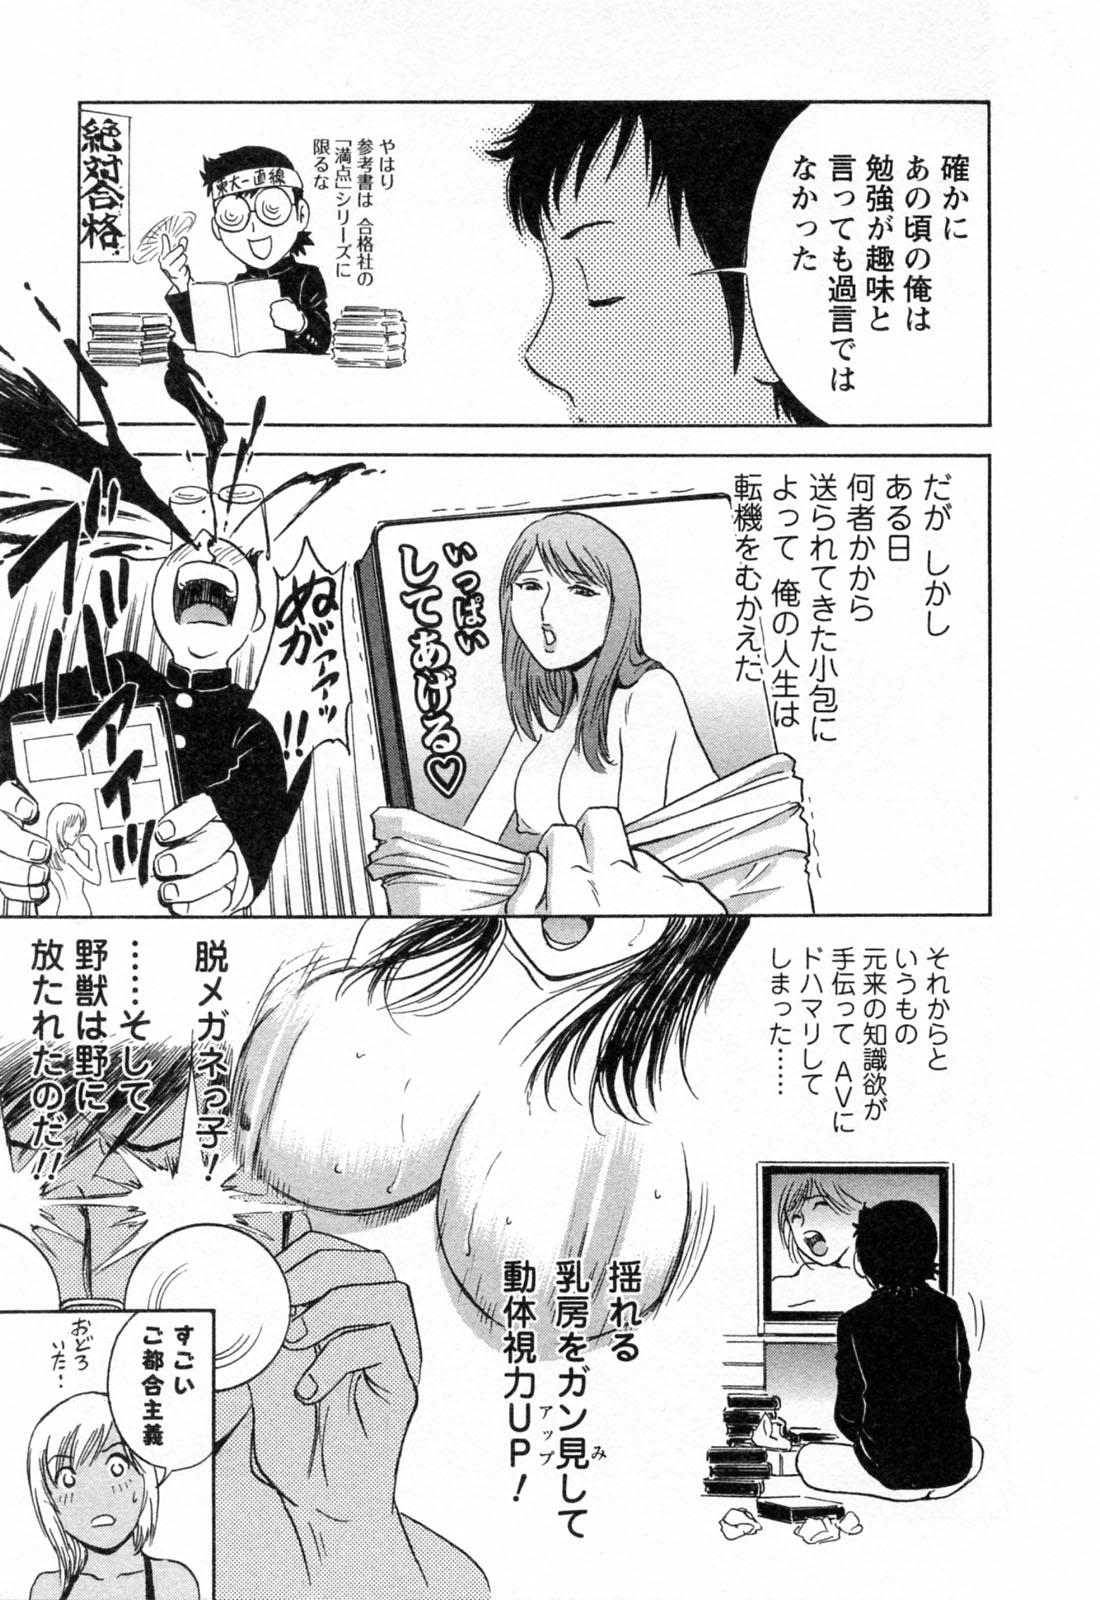 [Hidemaru] Mo-Retsu! Boin Sensei (Boing Boing Teacher) Vol.4 102